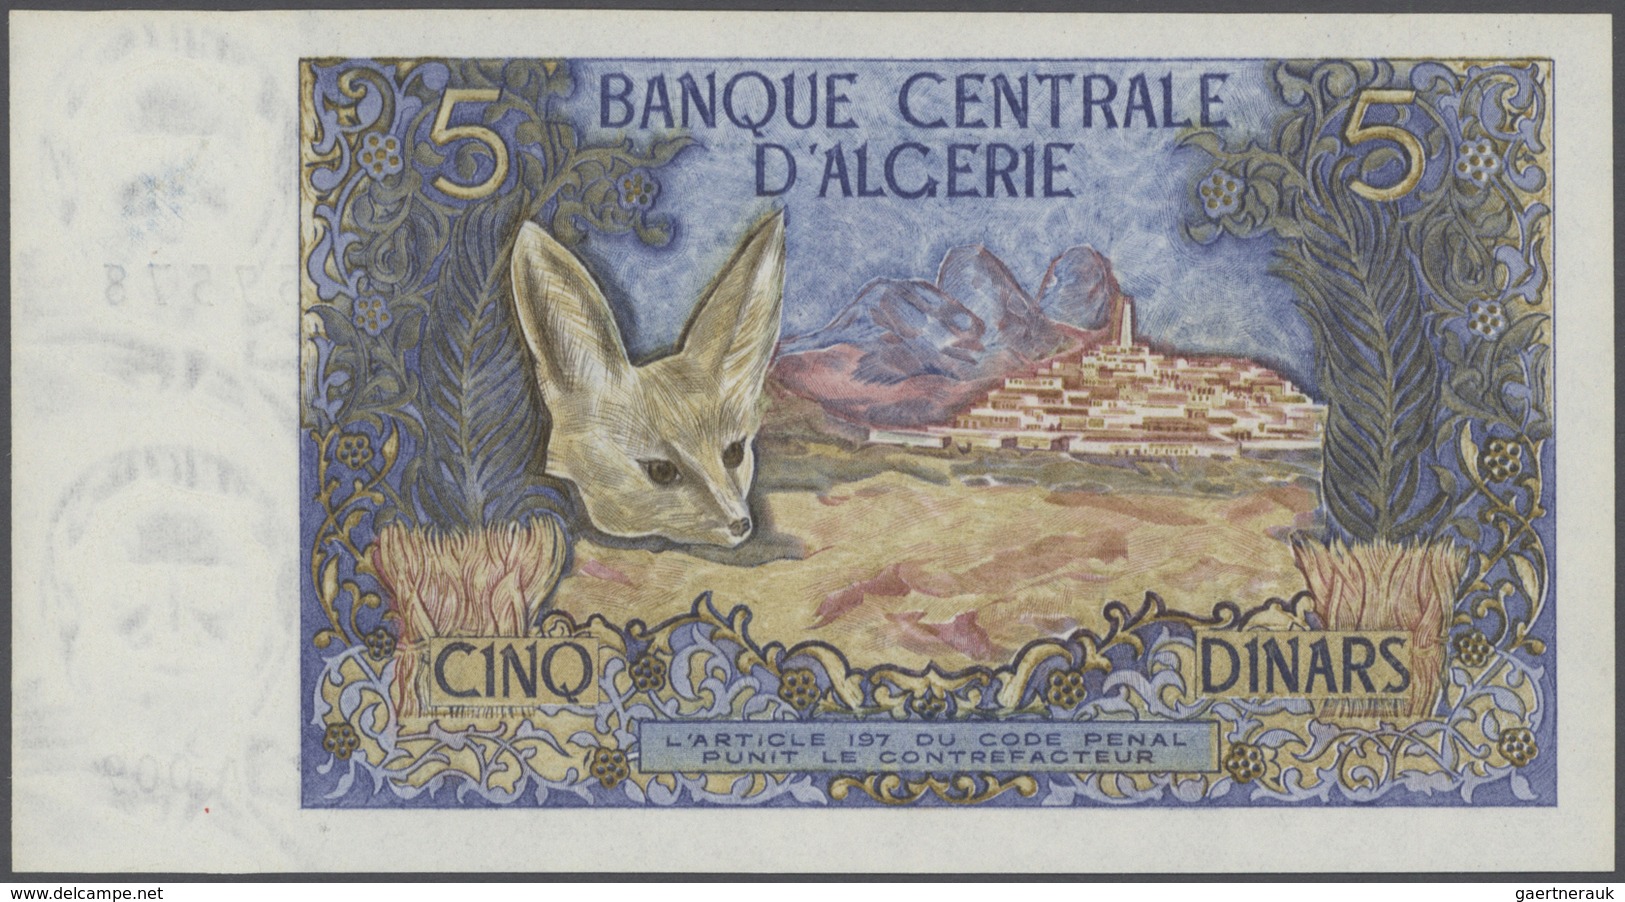 02708 Algeria / Algerien: Set With 4 Banknotes 500 Francs 1958 P.117 (F-), 100 Dinars 1964 P.125 (F), 5 Di - Algeria